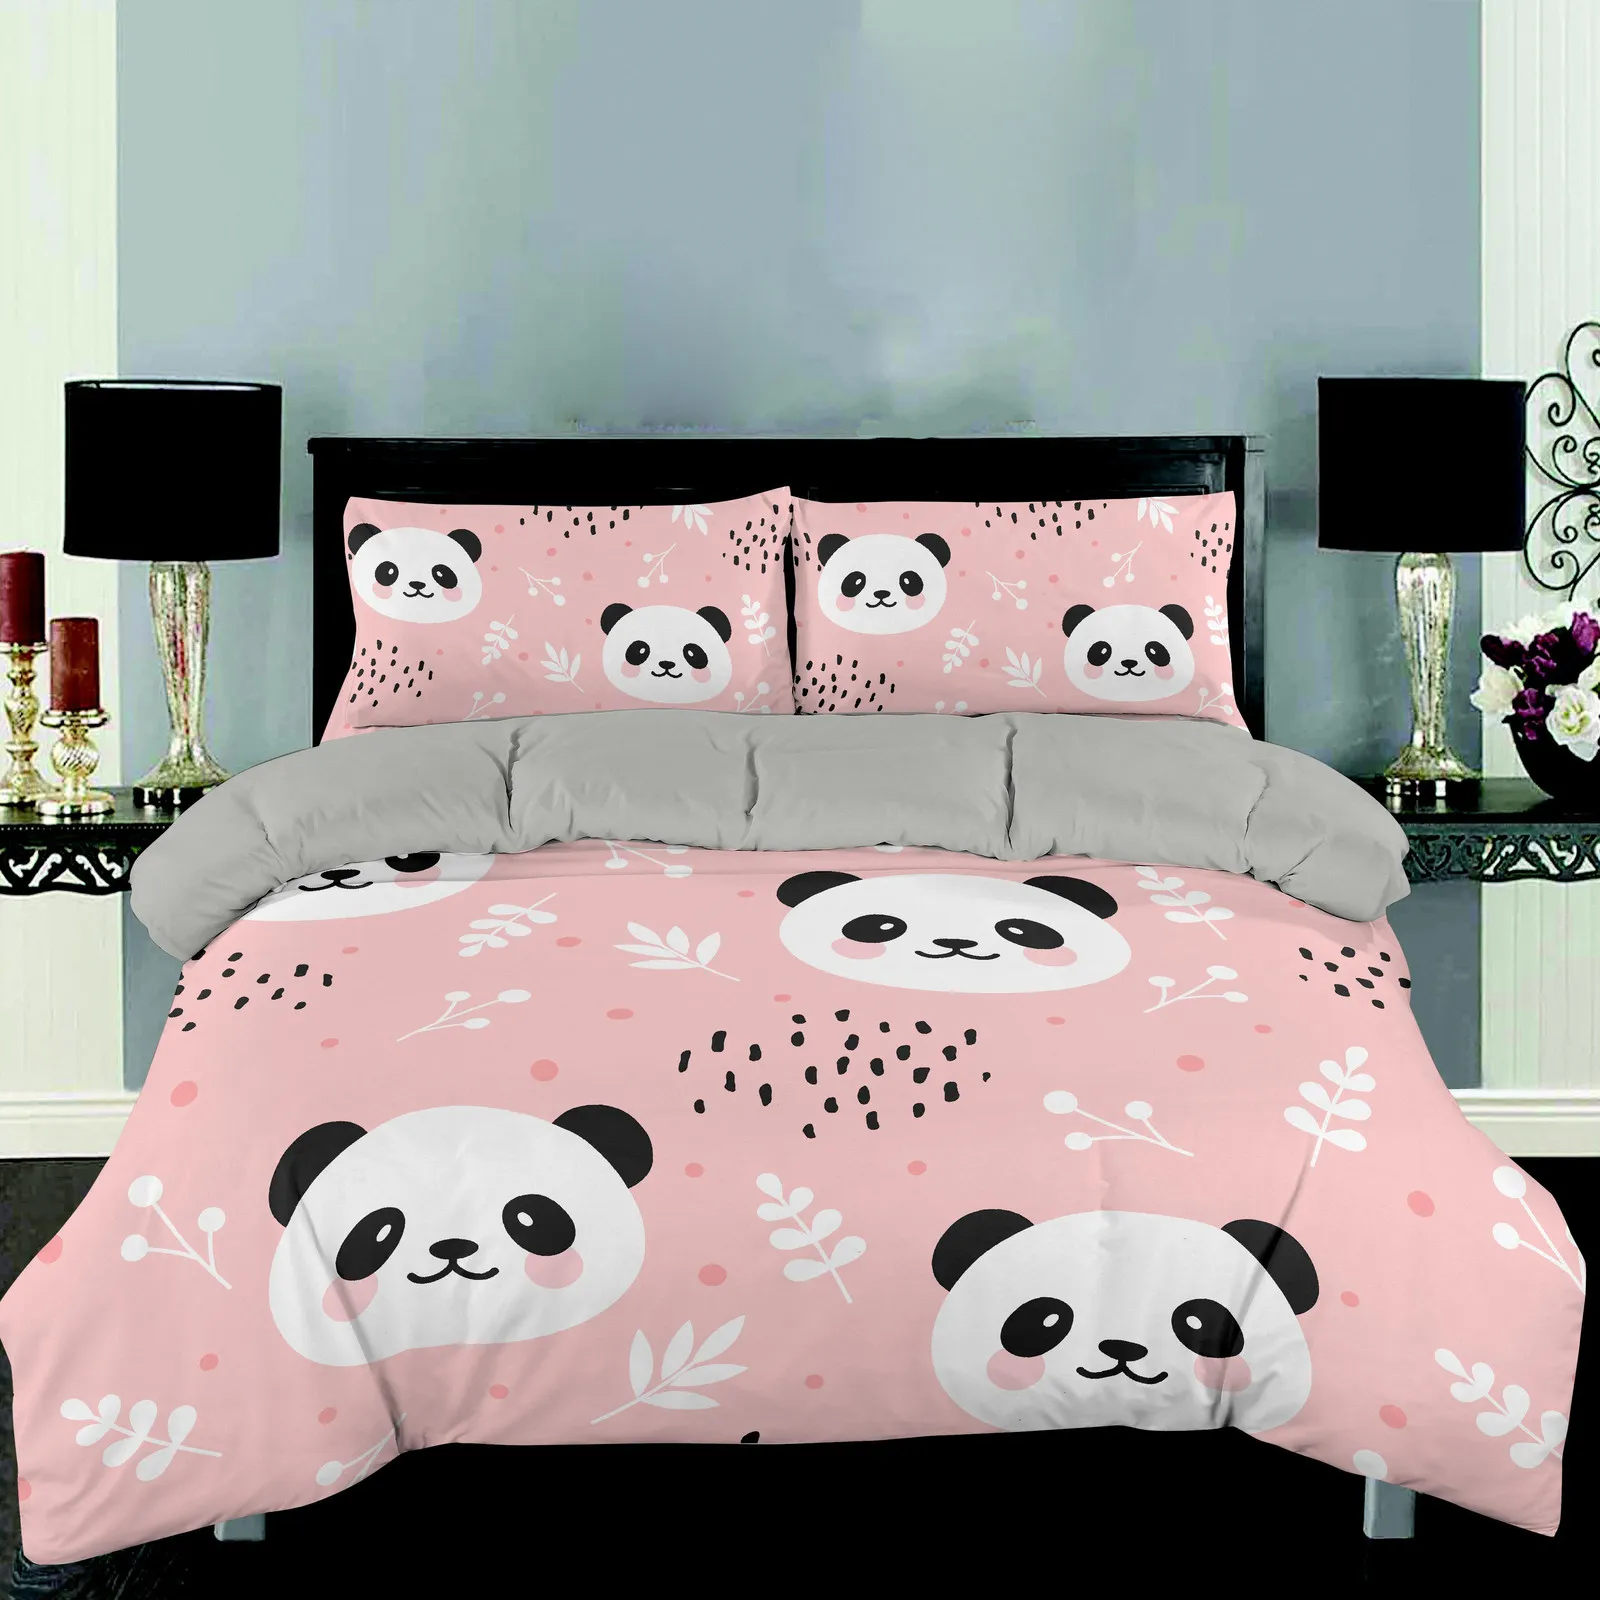 Juego de sábanas CVHouse Kawaii Panda tamaño queen, juegos de cama Kawaii  Cute Panda para niñas, niños y adolescentes, bonitos juegos de sábanas  bajeras Panda, 1 sábana encimera y 1 sábana bajera